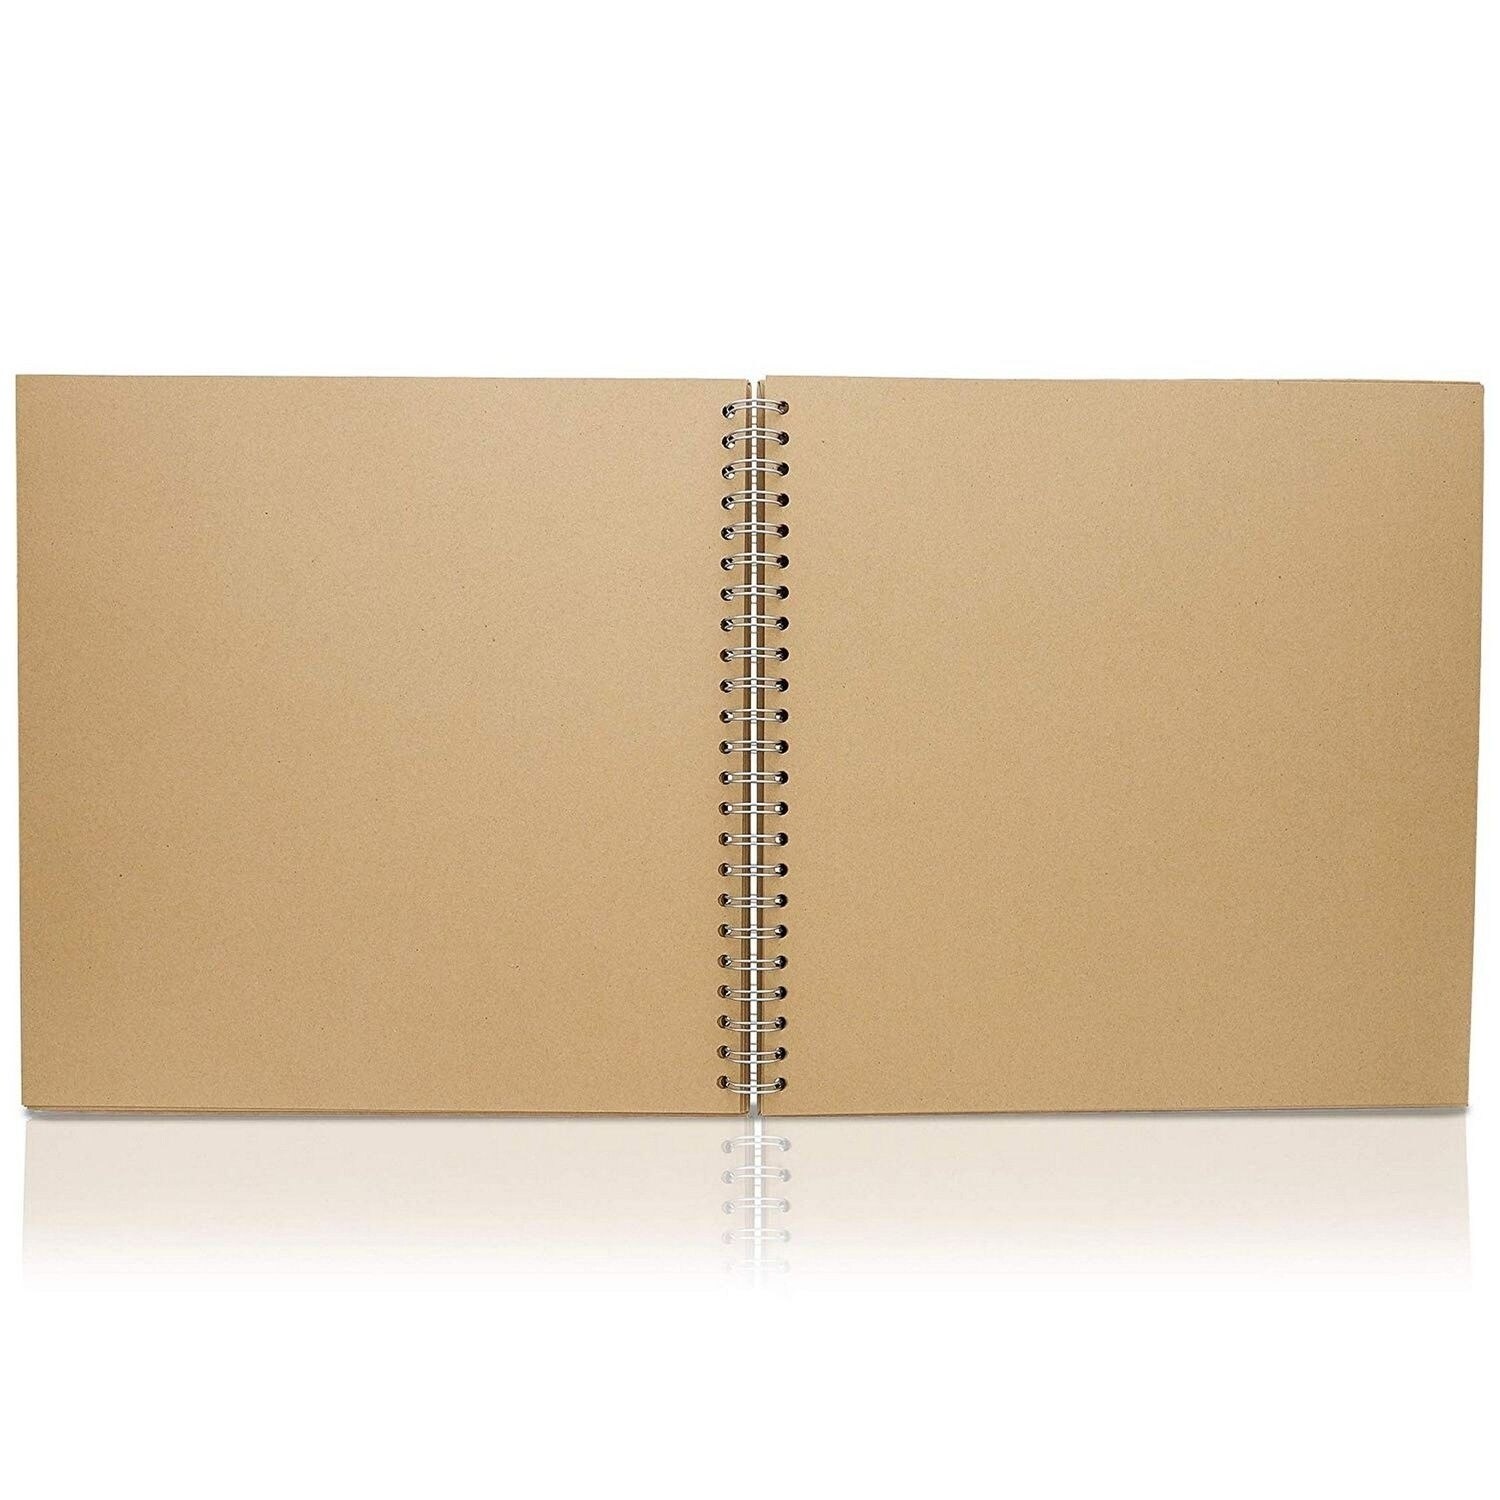  12x12 Scrapbook Album Hardcover (Blank), Kraft Paper